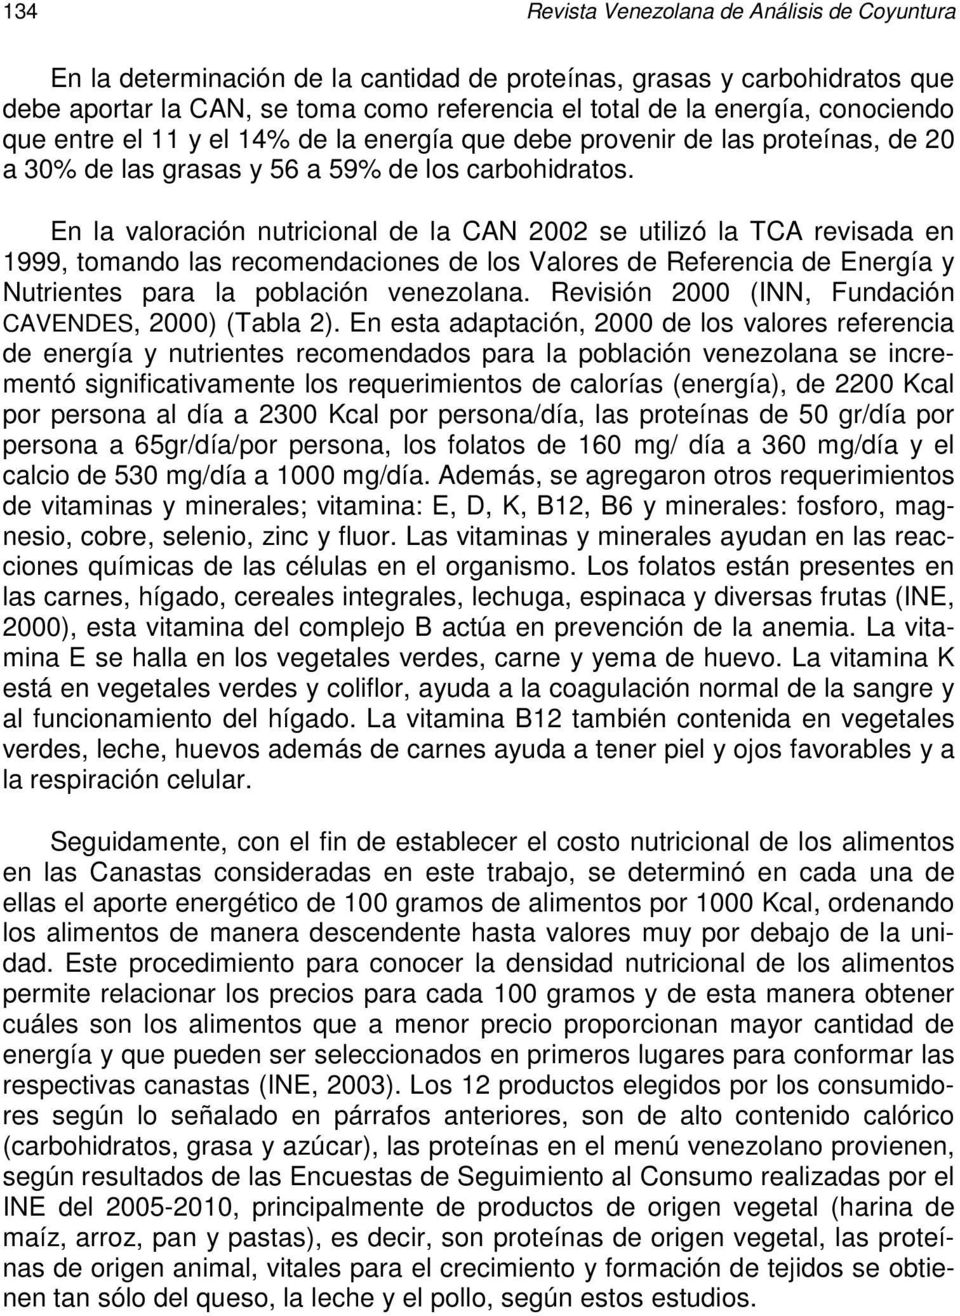 En la valoración nutricional de la CAN 2002 se utilizó la TCA revisada en 1999, tomando las recomendaciones de los Valores de Referencia de Energía y Nutrientes para la población venezolana.